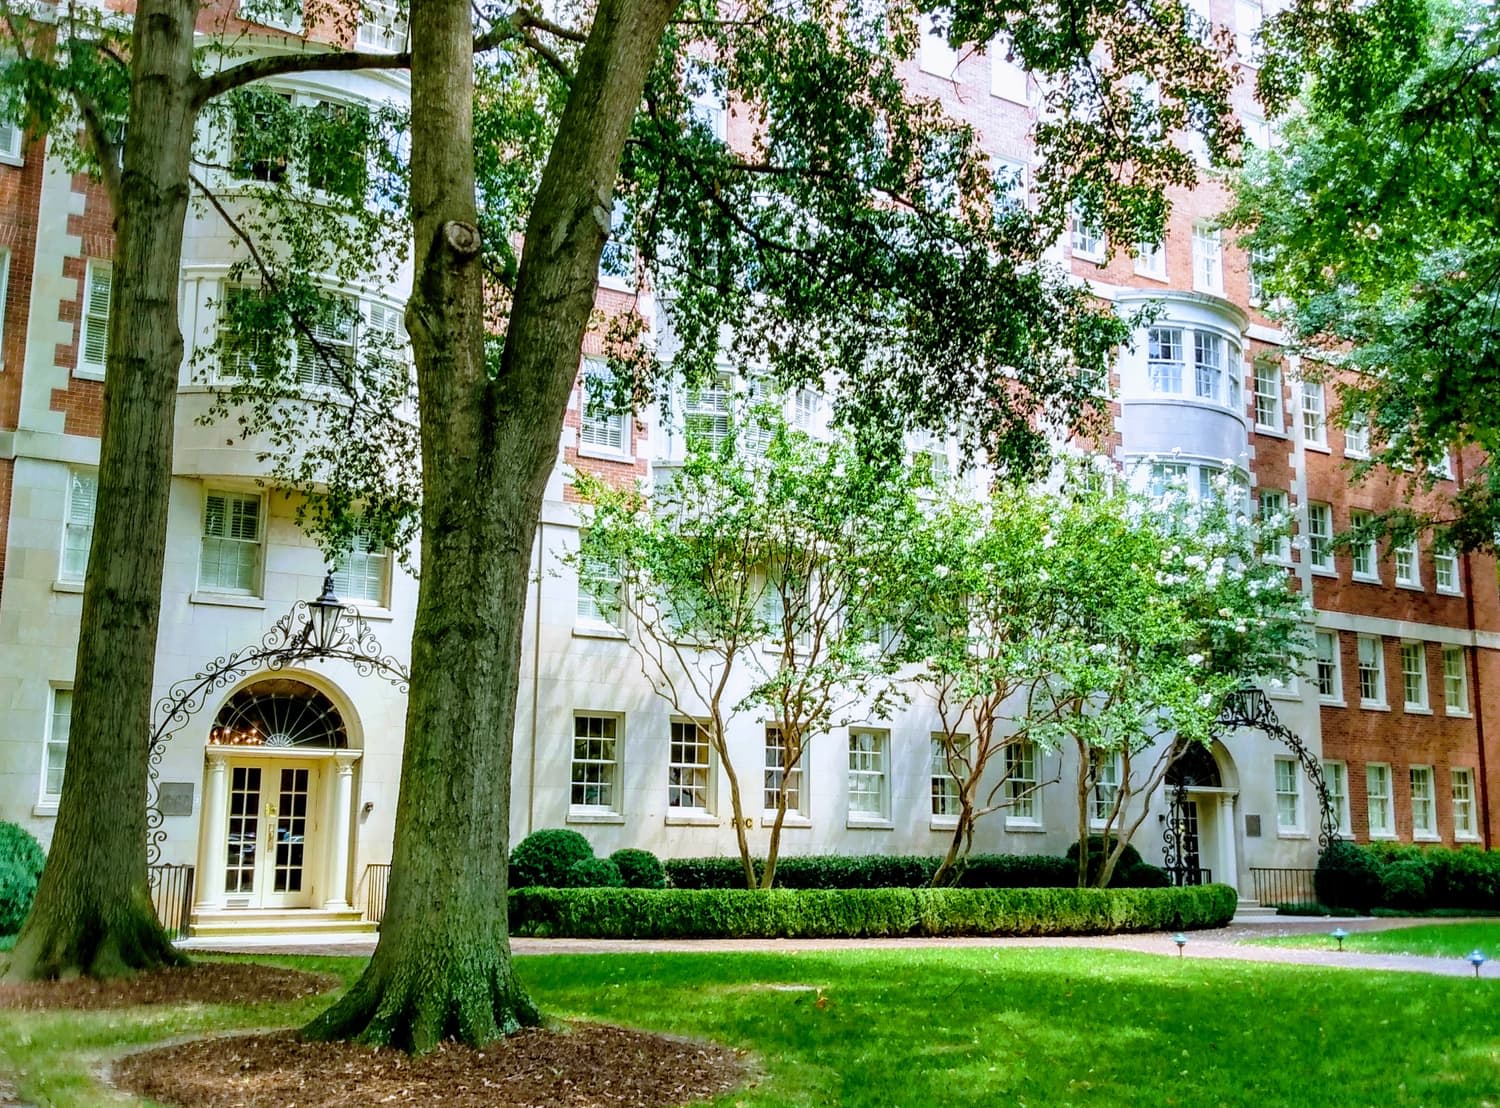 LaGrange College - a four year, private college in Georgia